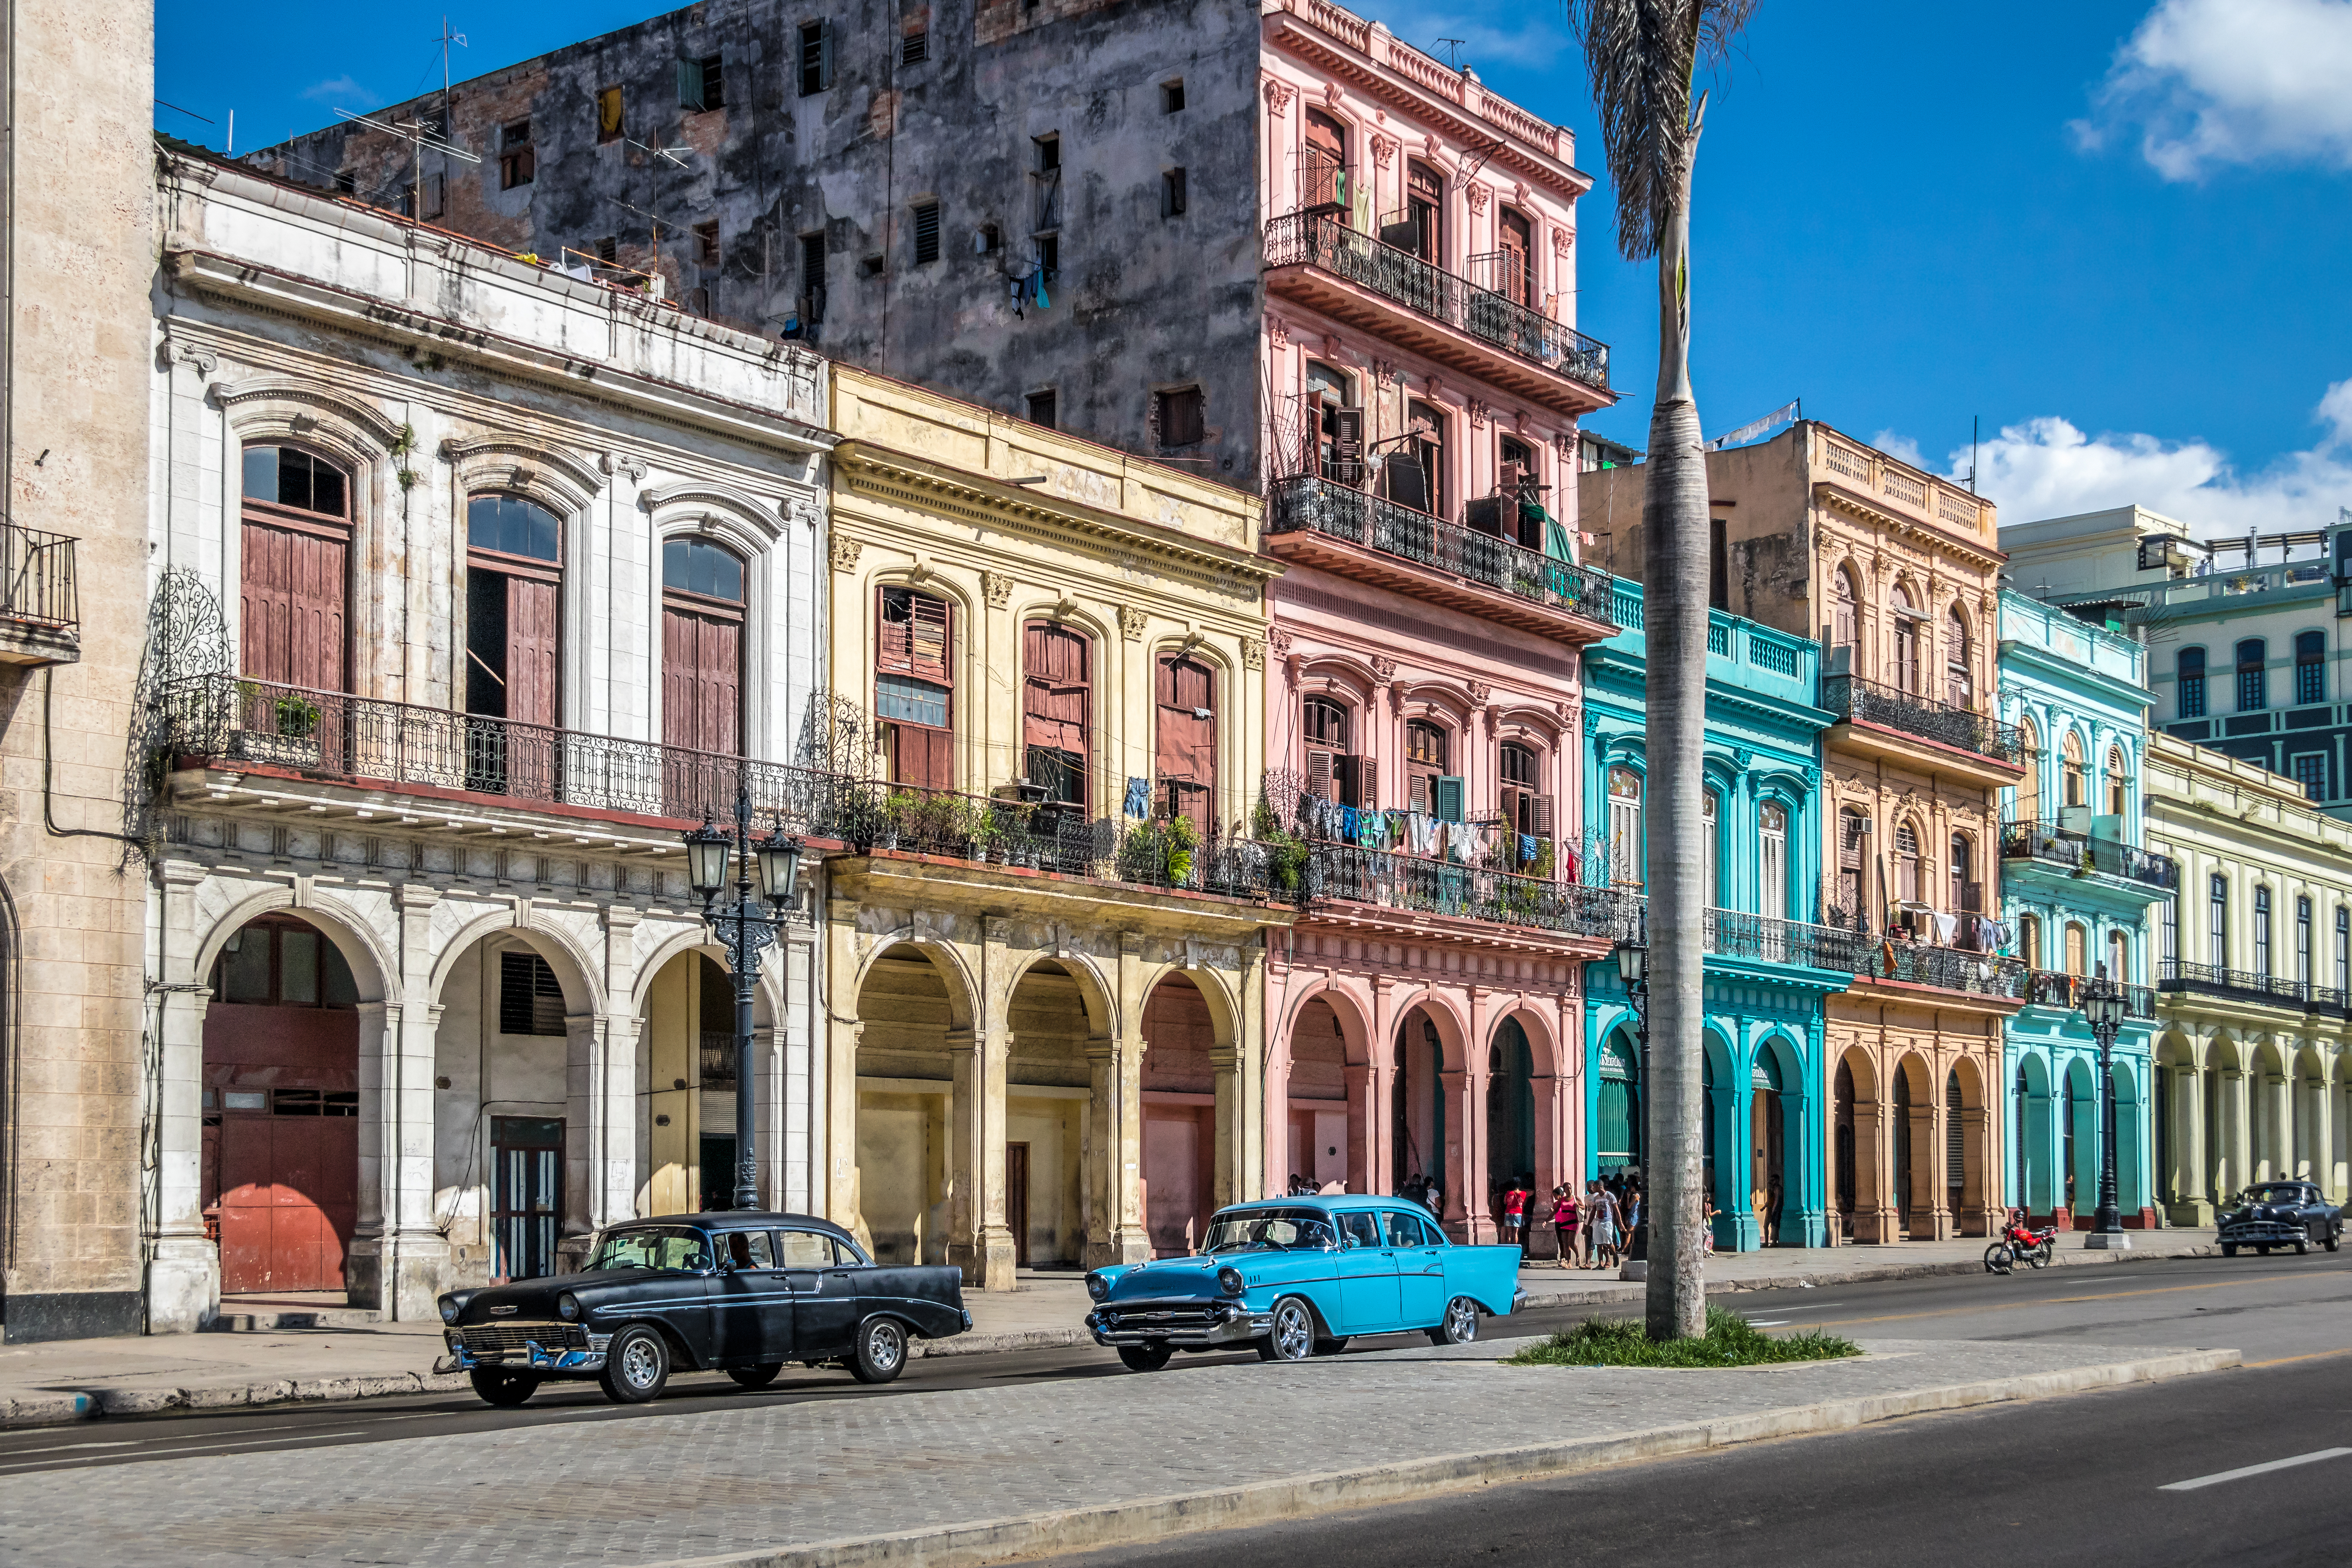     Cuba: le gouvernement va acheter des dollars au taux du marché noir

